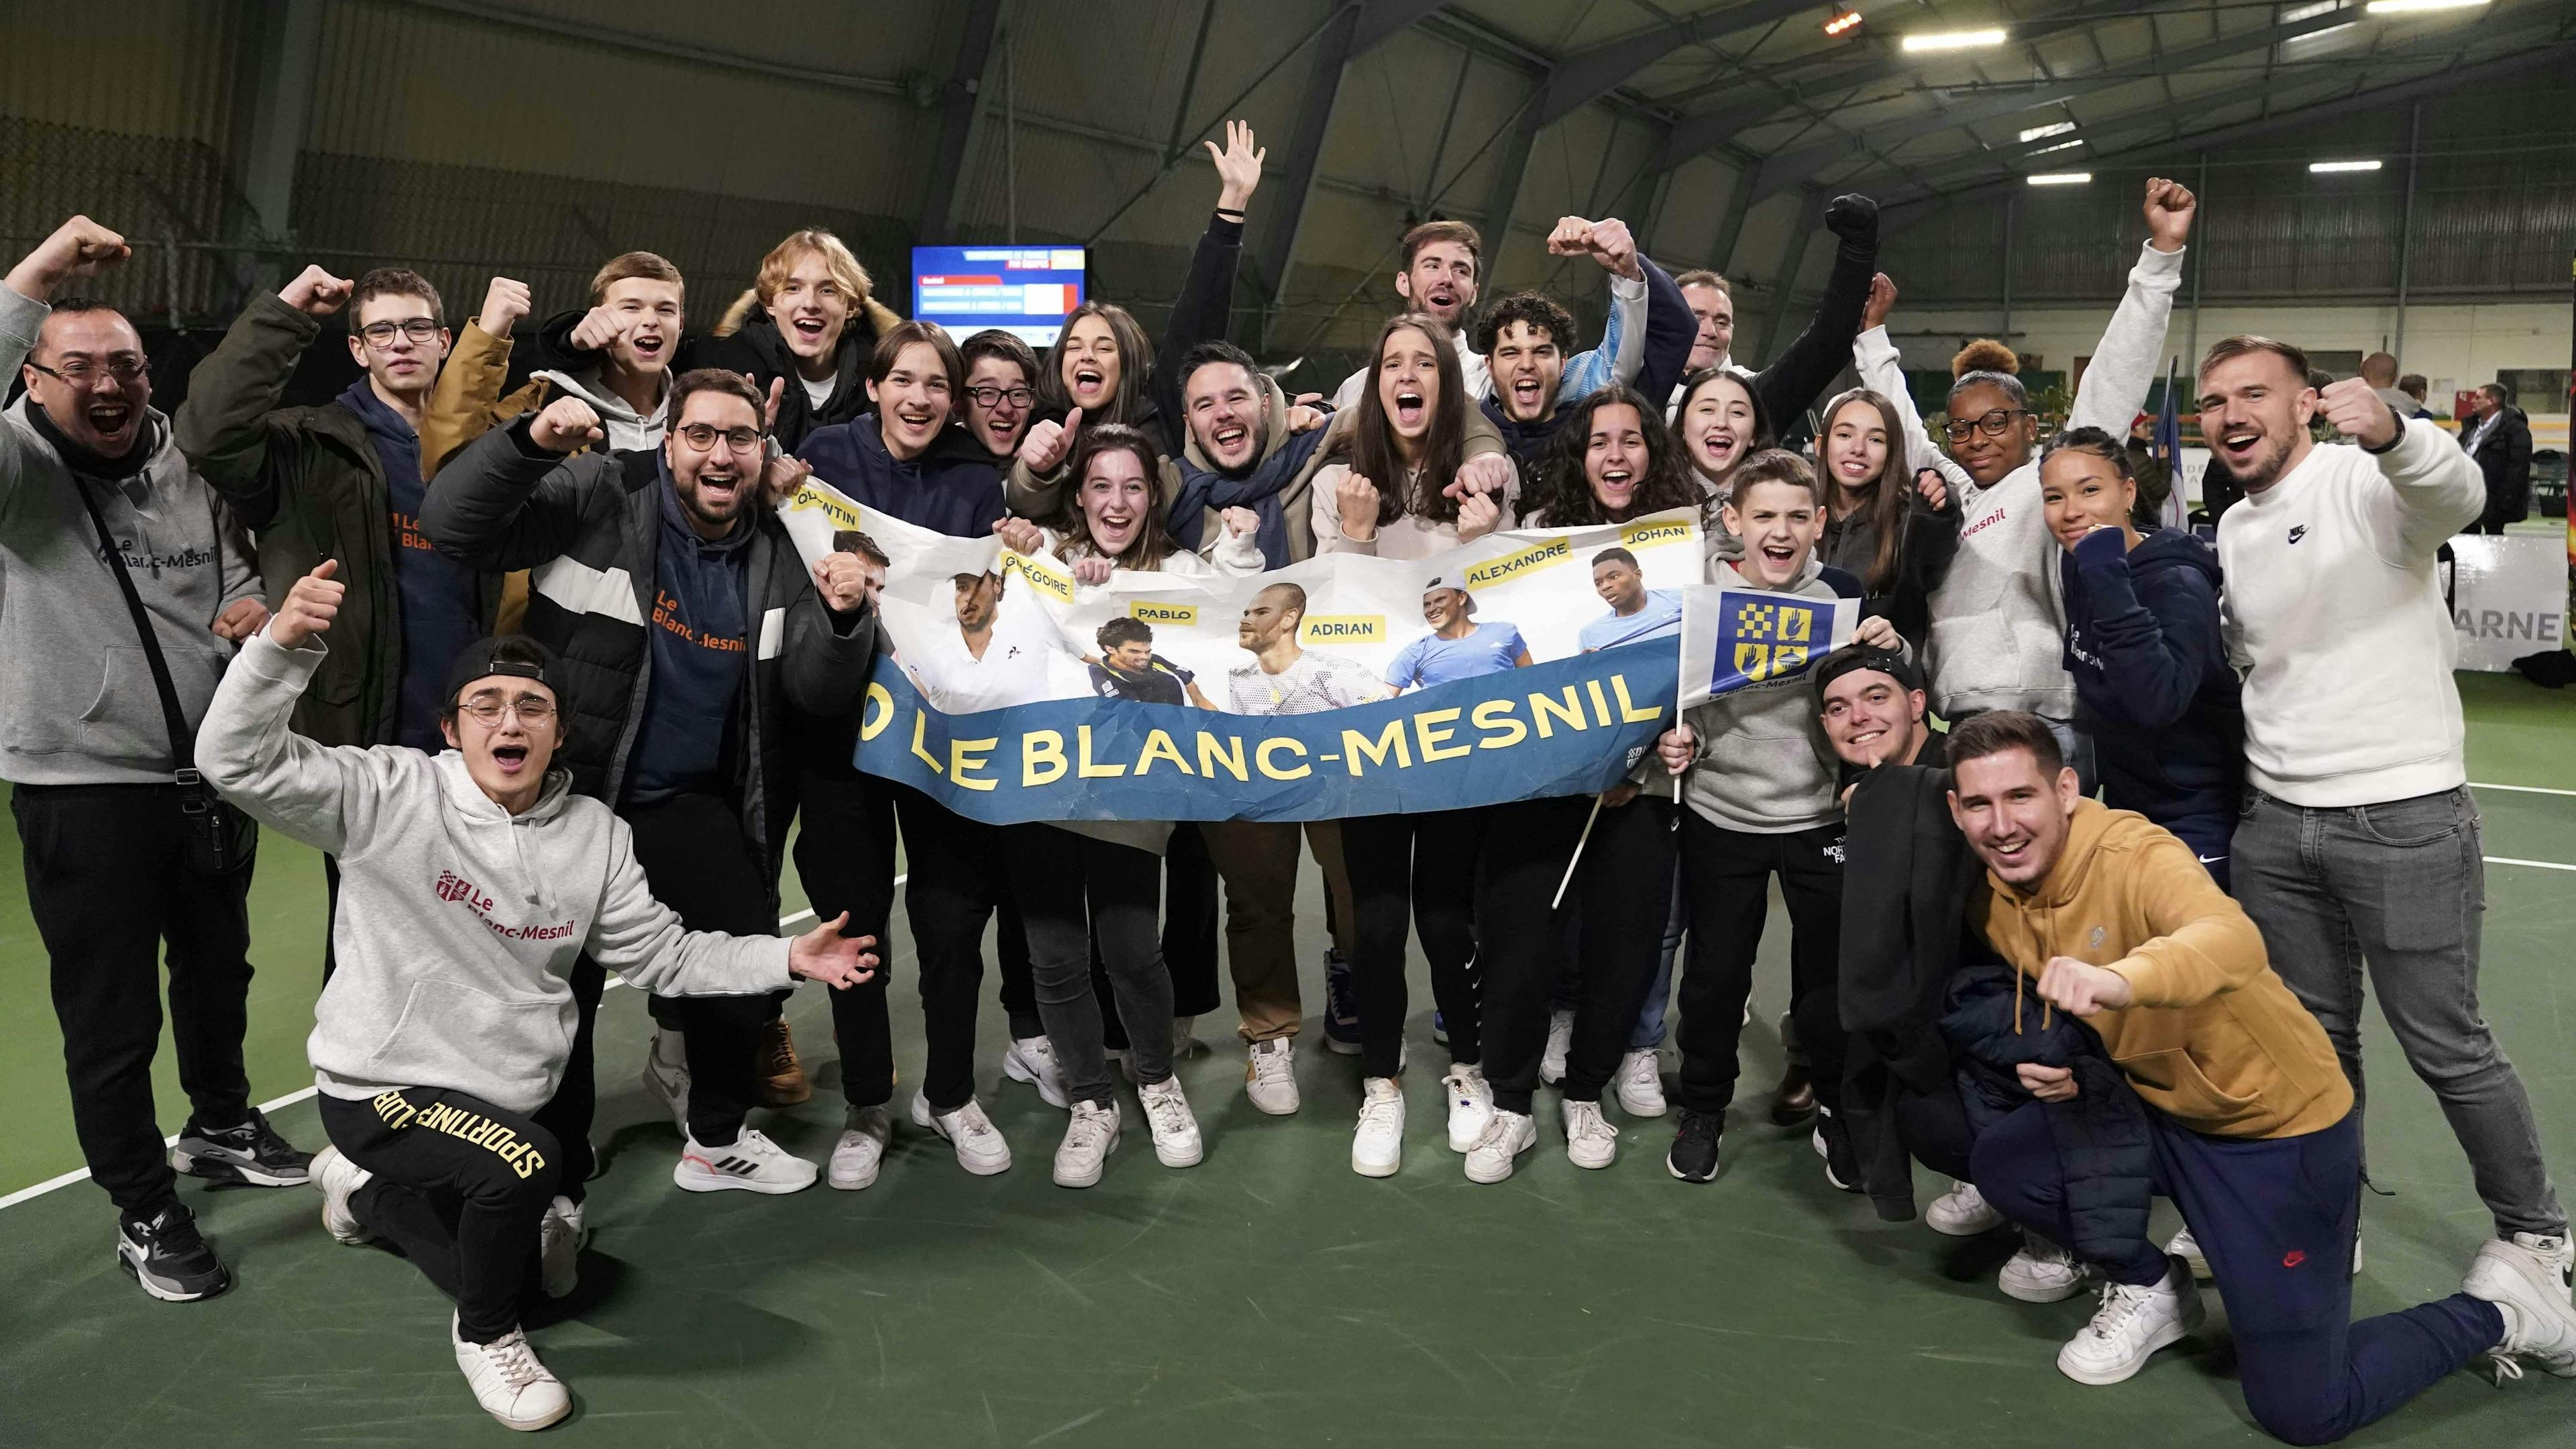 Le premier titre de champion de France est fêté dignement par les supporters de Blanc-Mesnil !